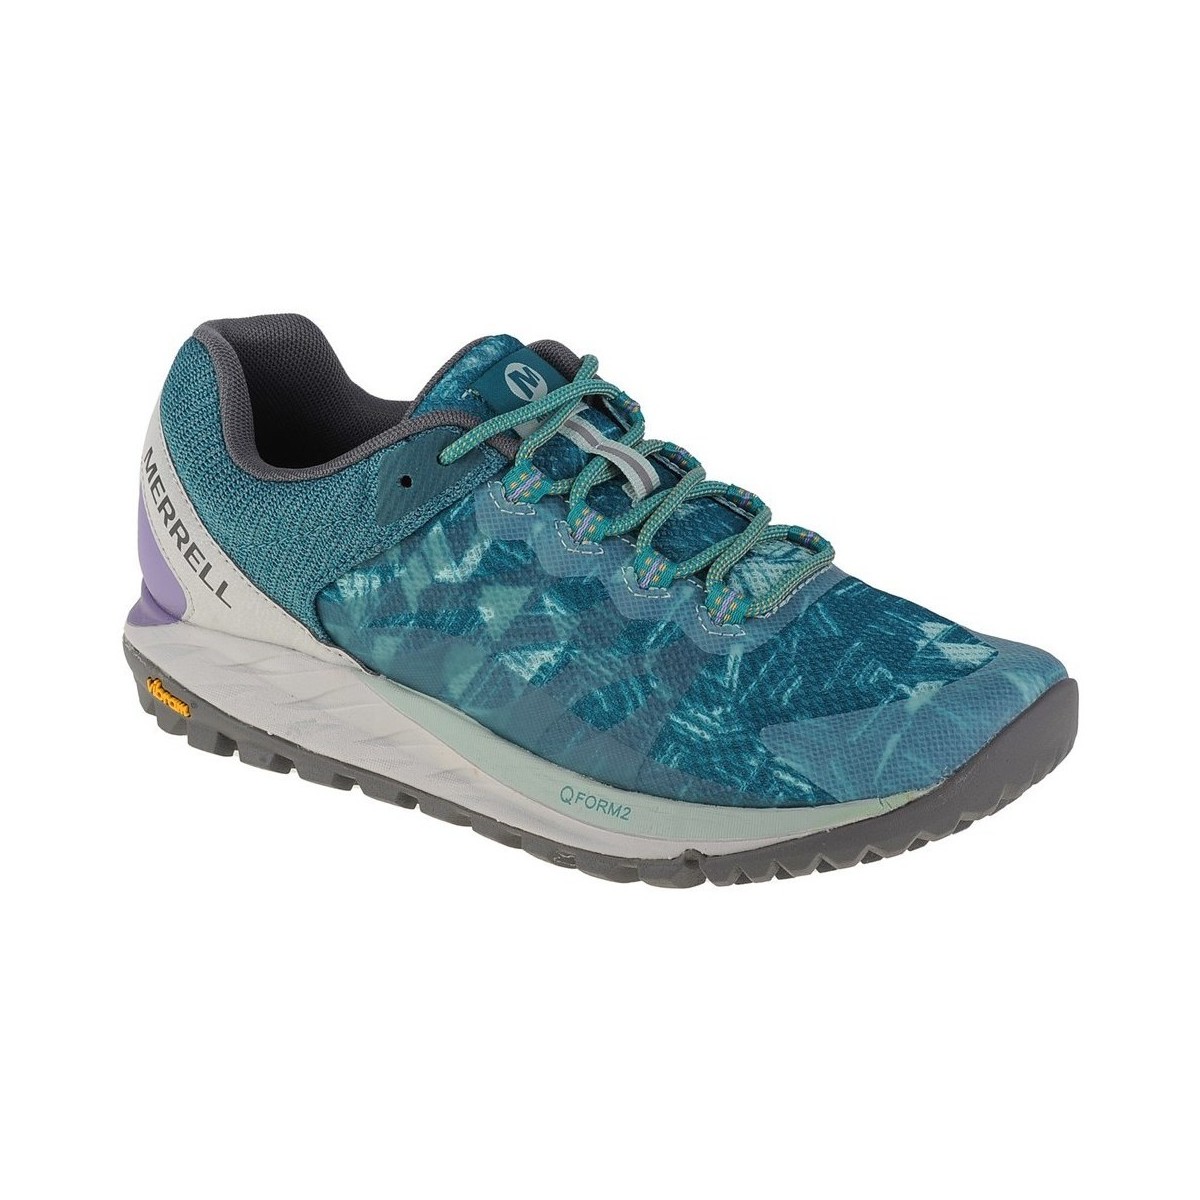 Chaussures Femme Running / trail Merrell Antora 2 Bleu